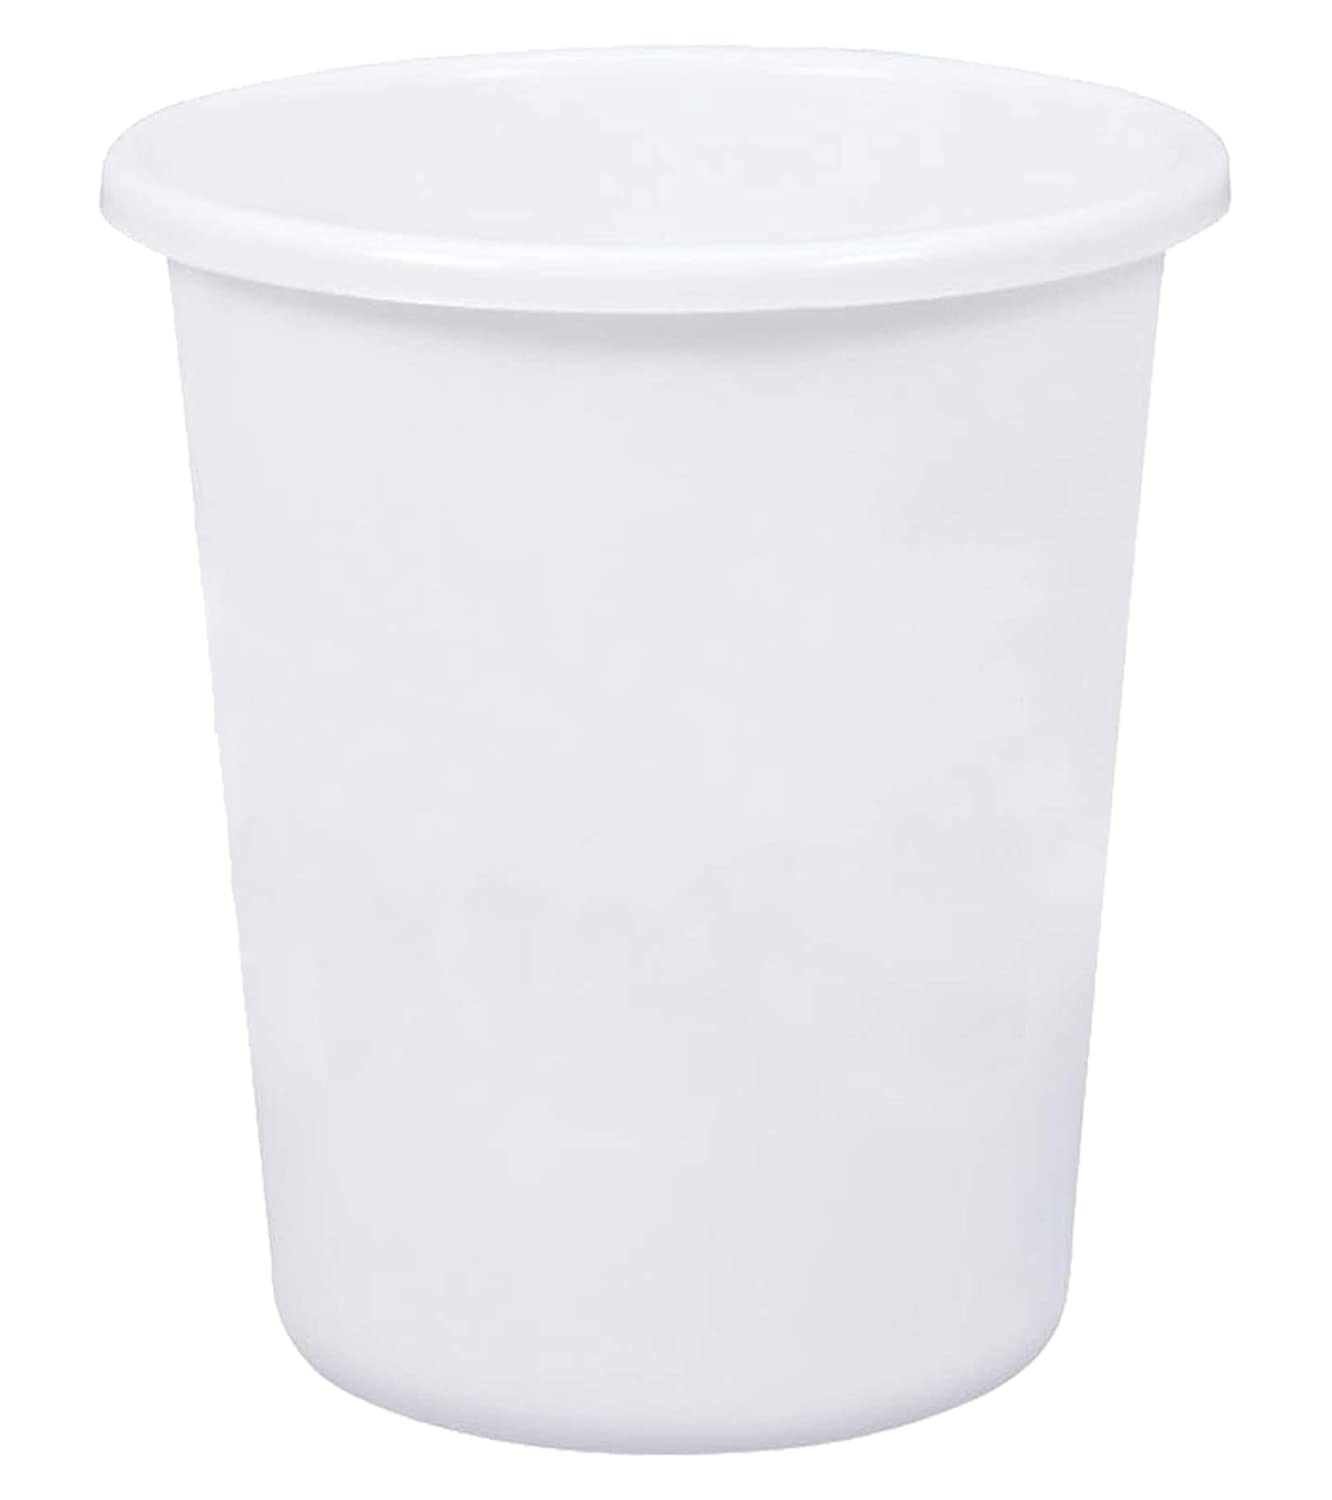 Kuber Industries Plastic Open Dustbin Trash Bin Garbage Bin Waste Bin 5Ltr.- Pack of 4 White-47KM01060